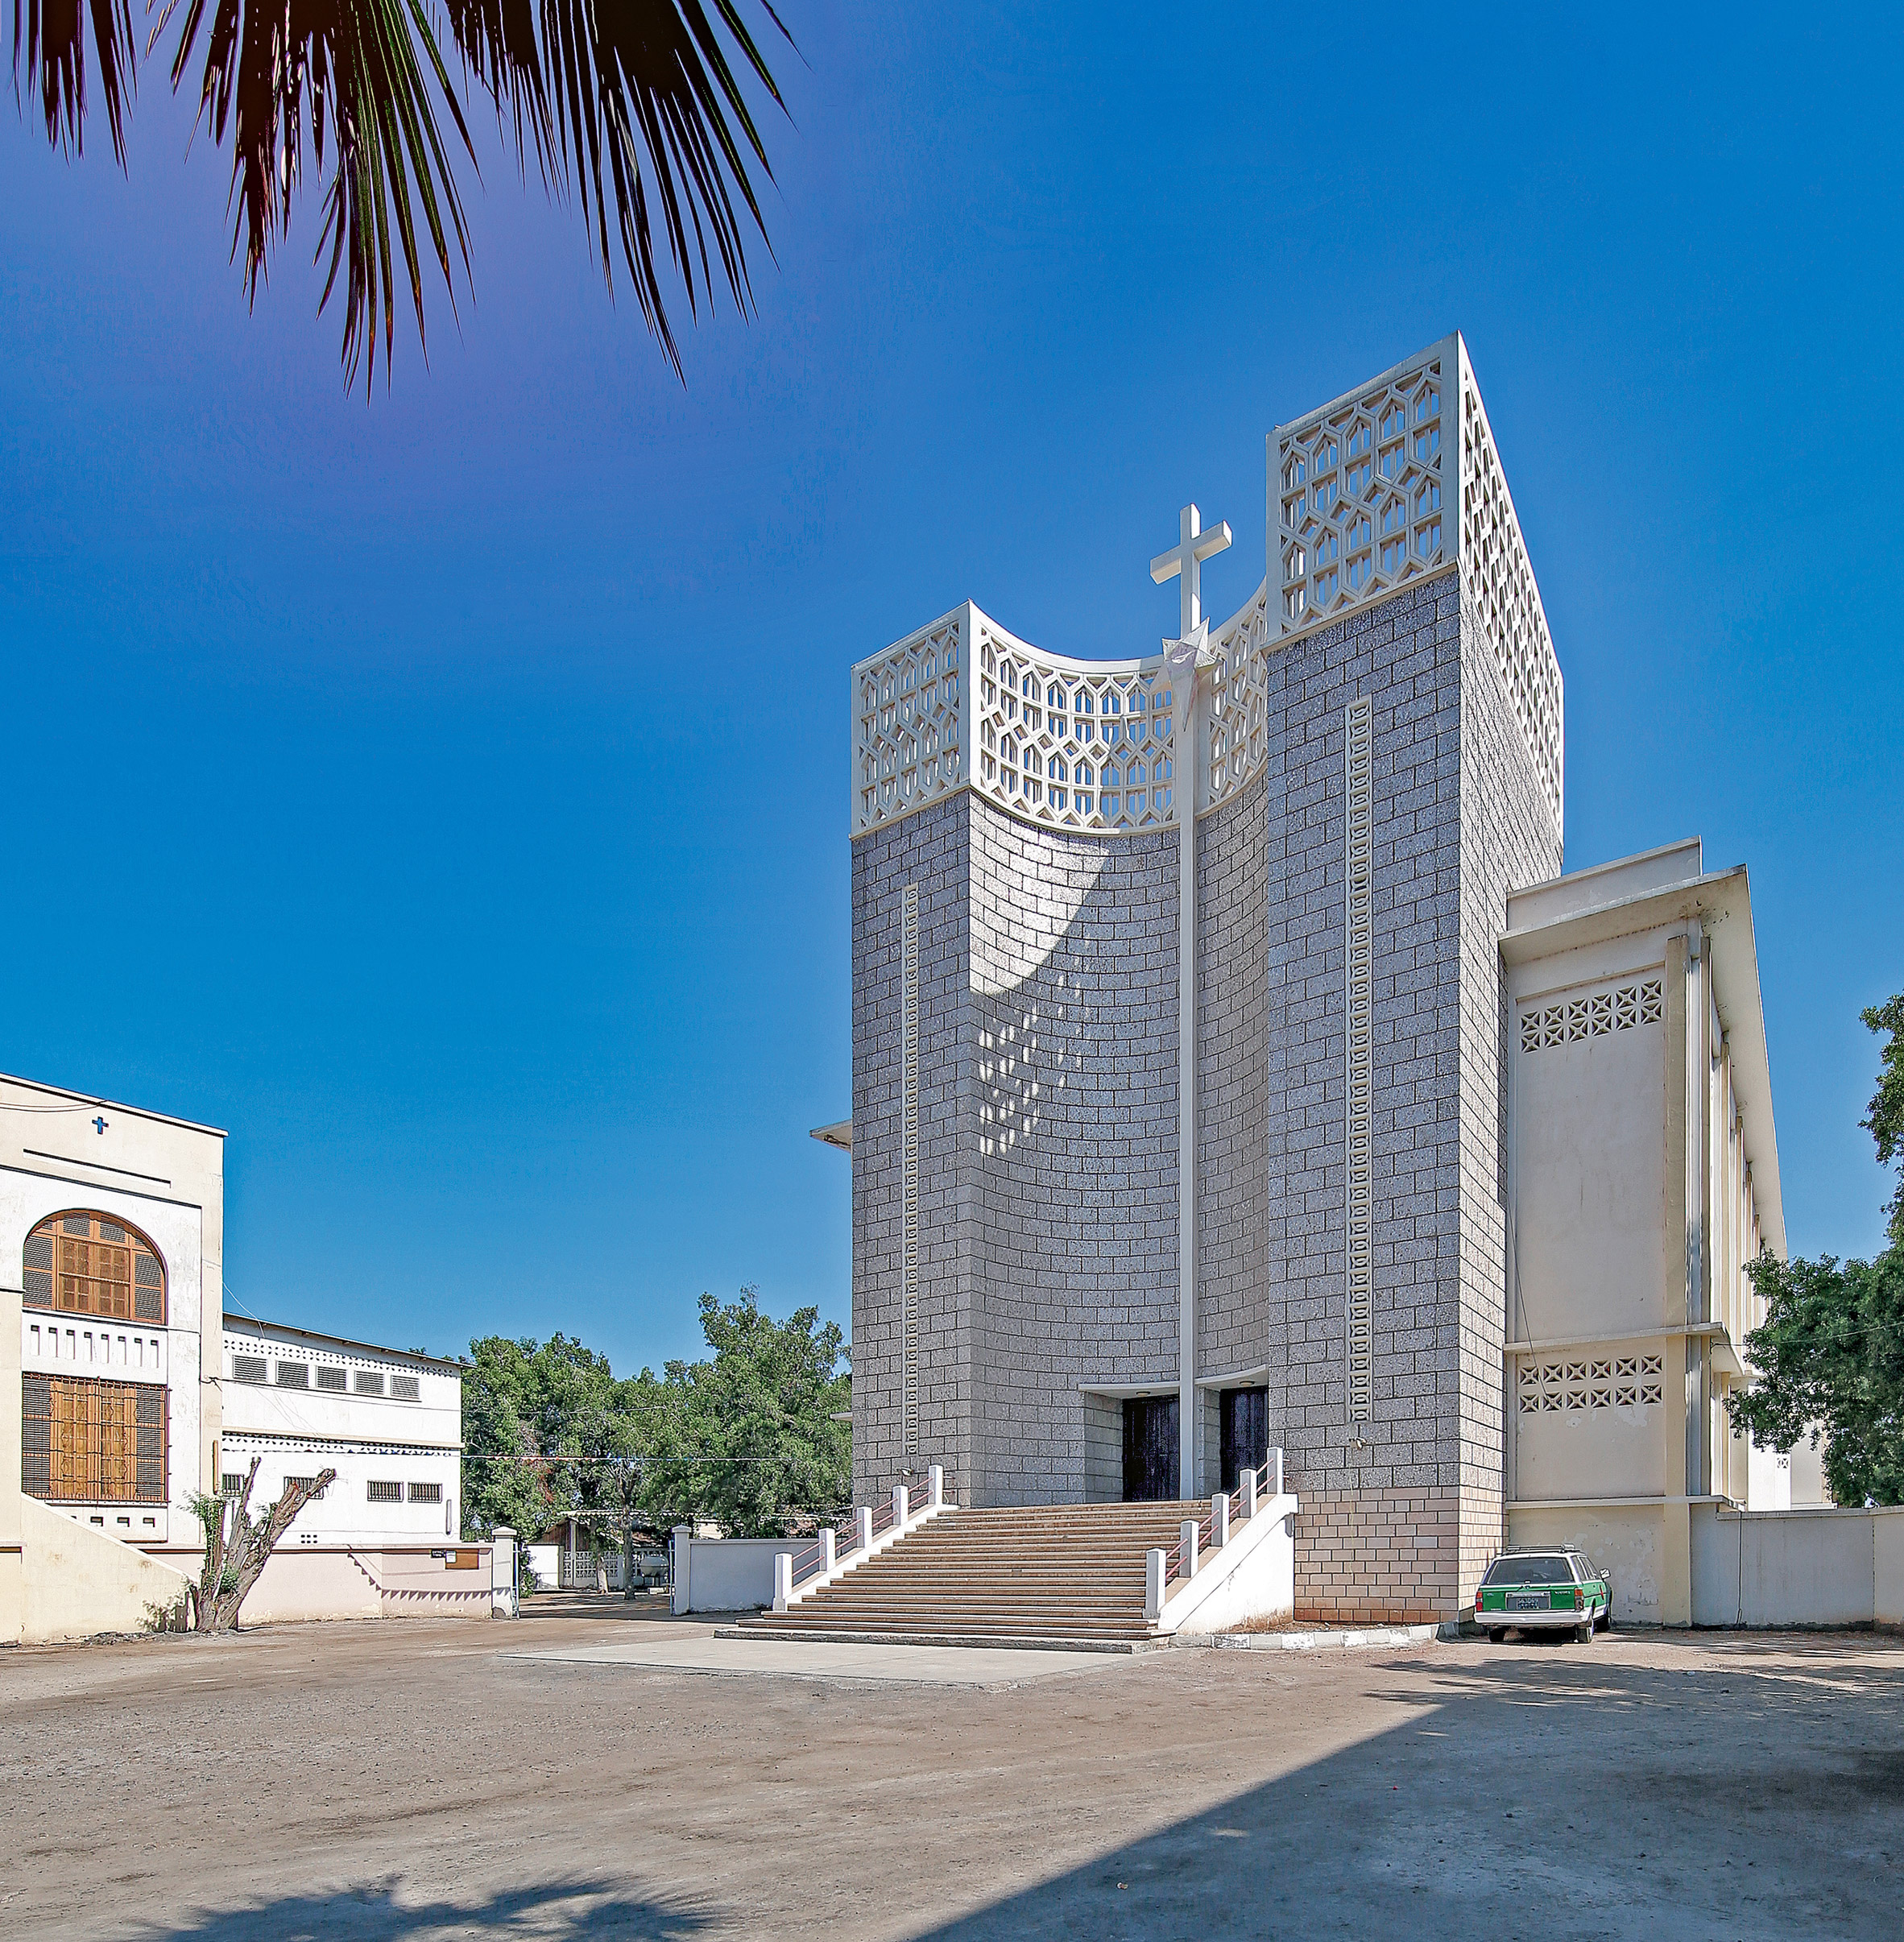 Djibouti Cathedral